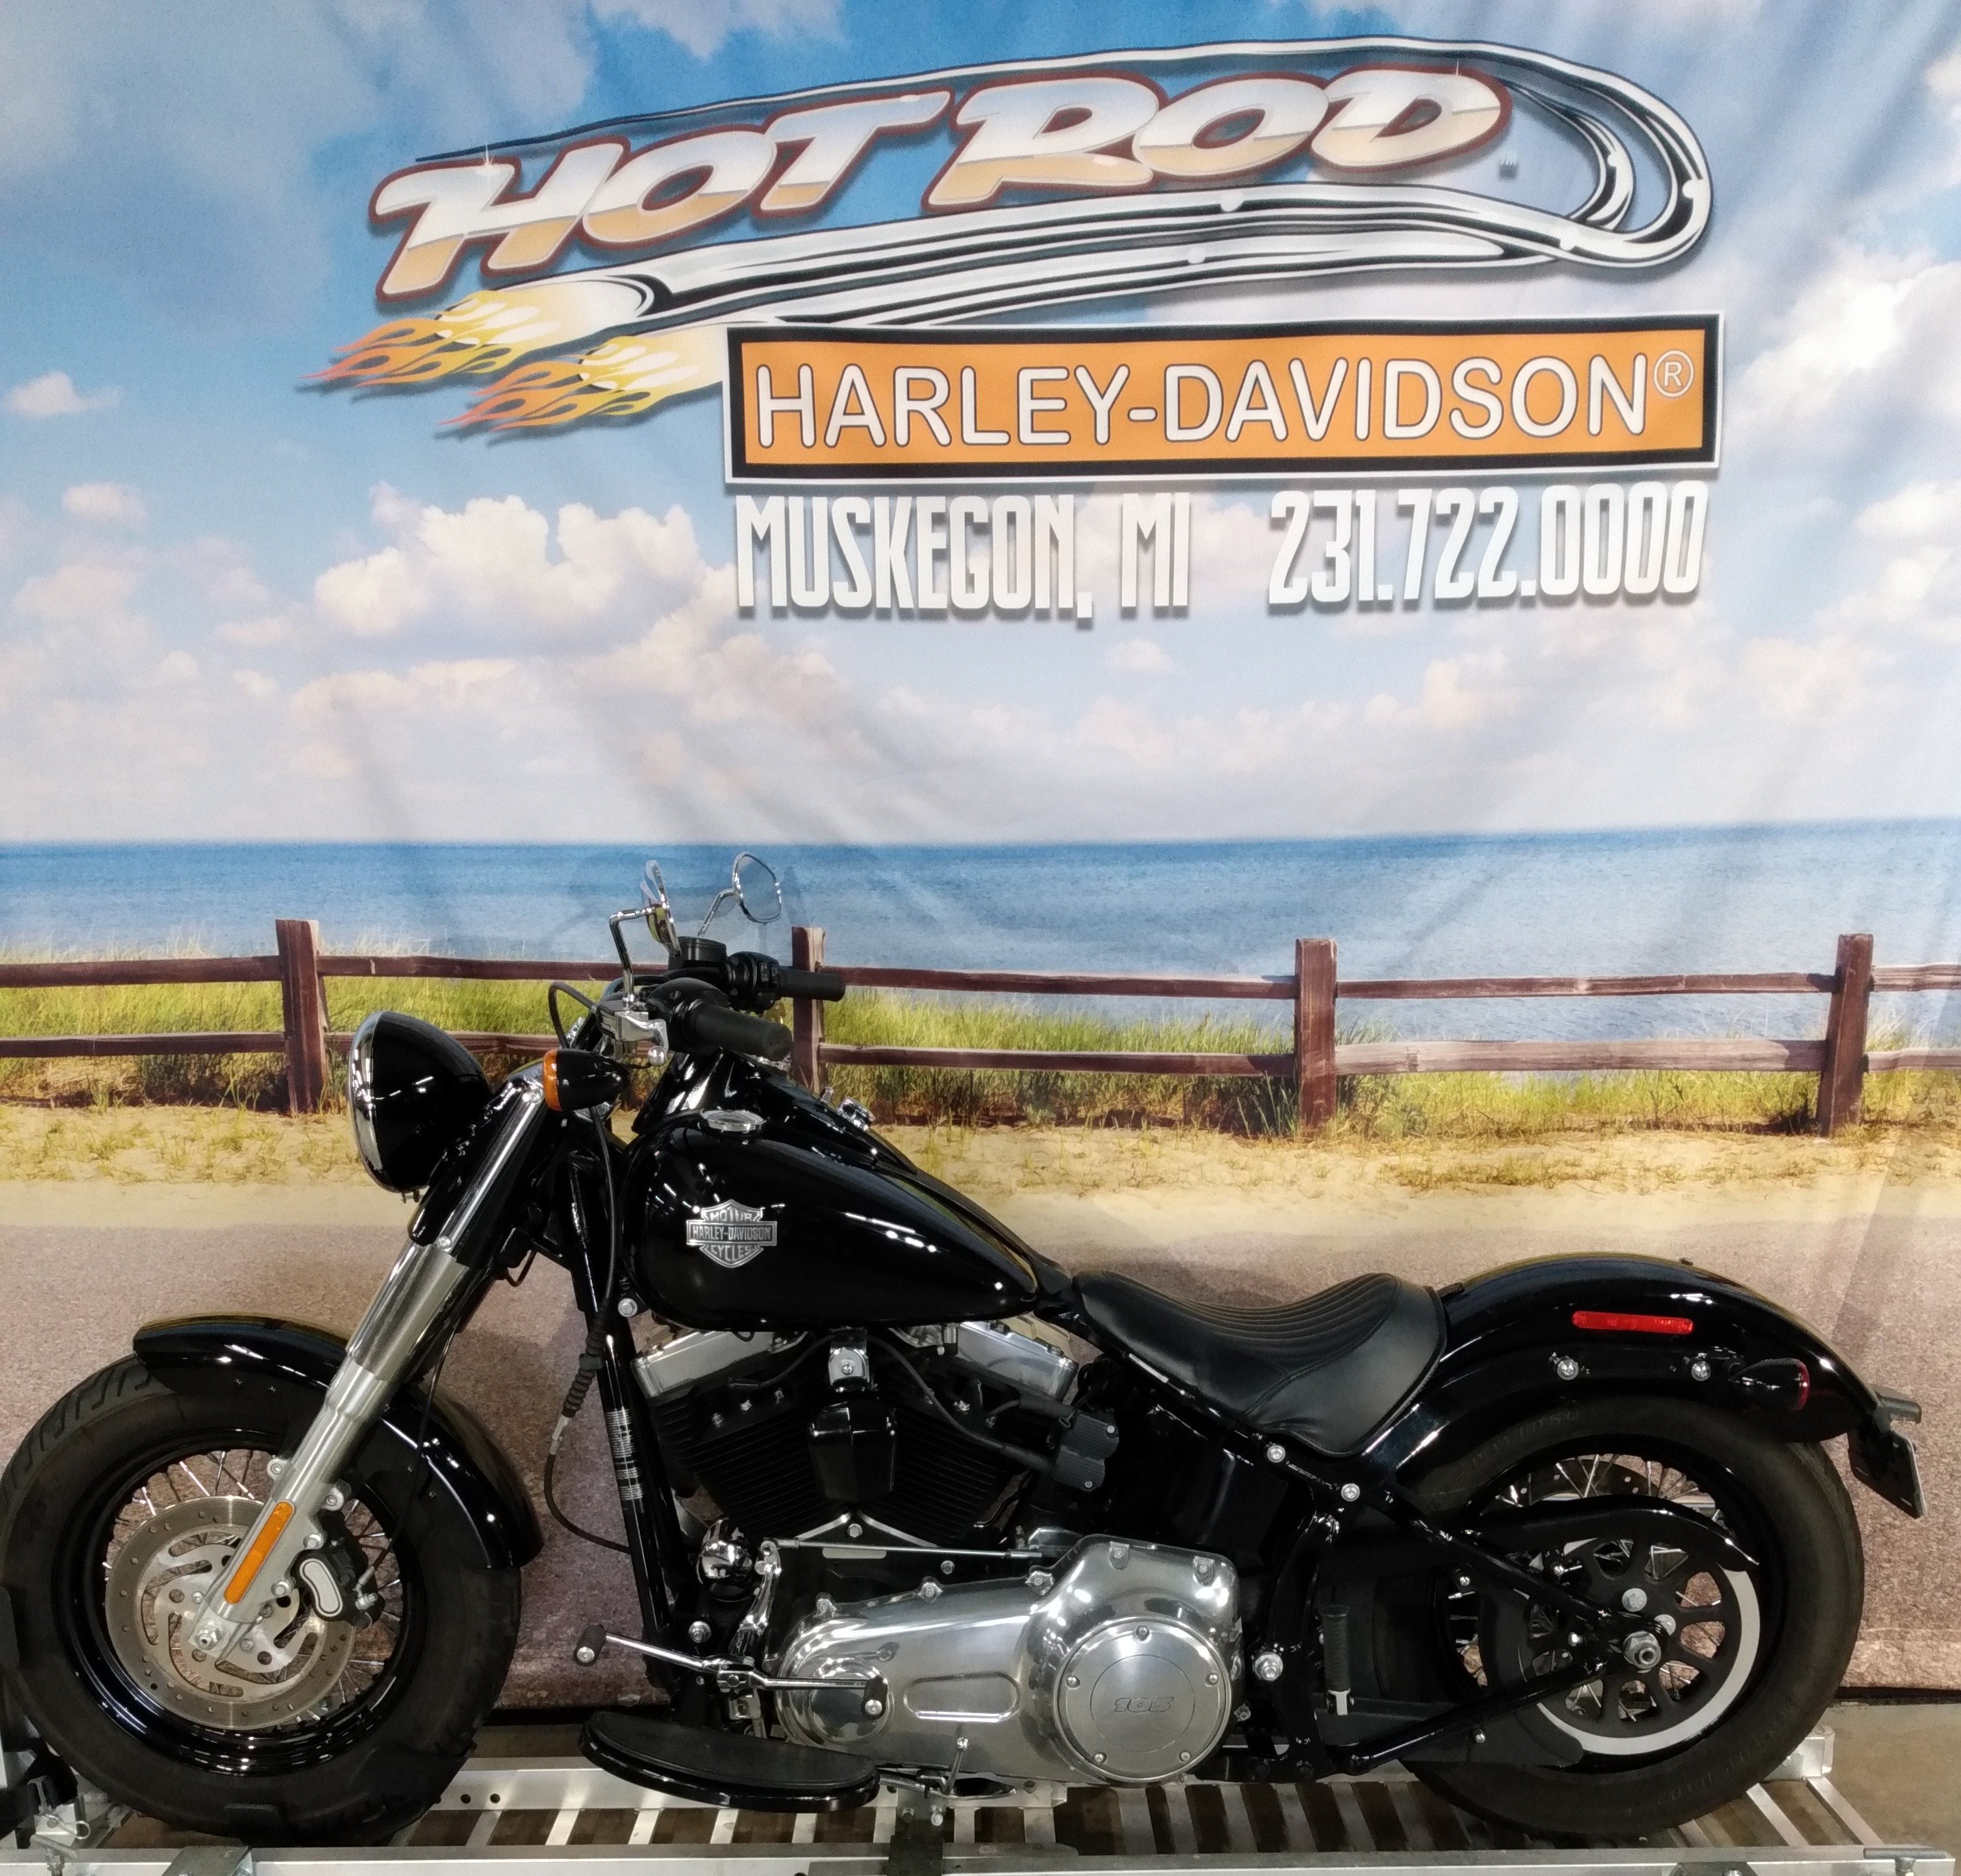 2014 Harley-Davidson Softail Slim at Hot Rod Harley-Davidson